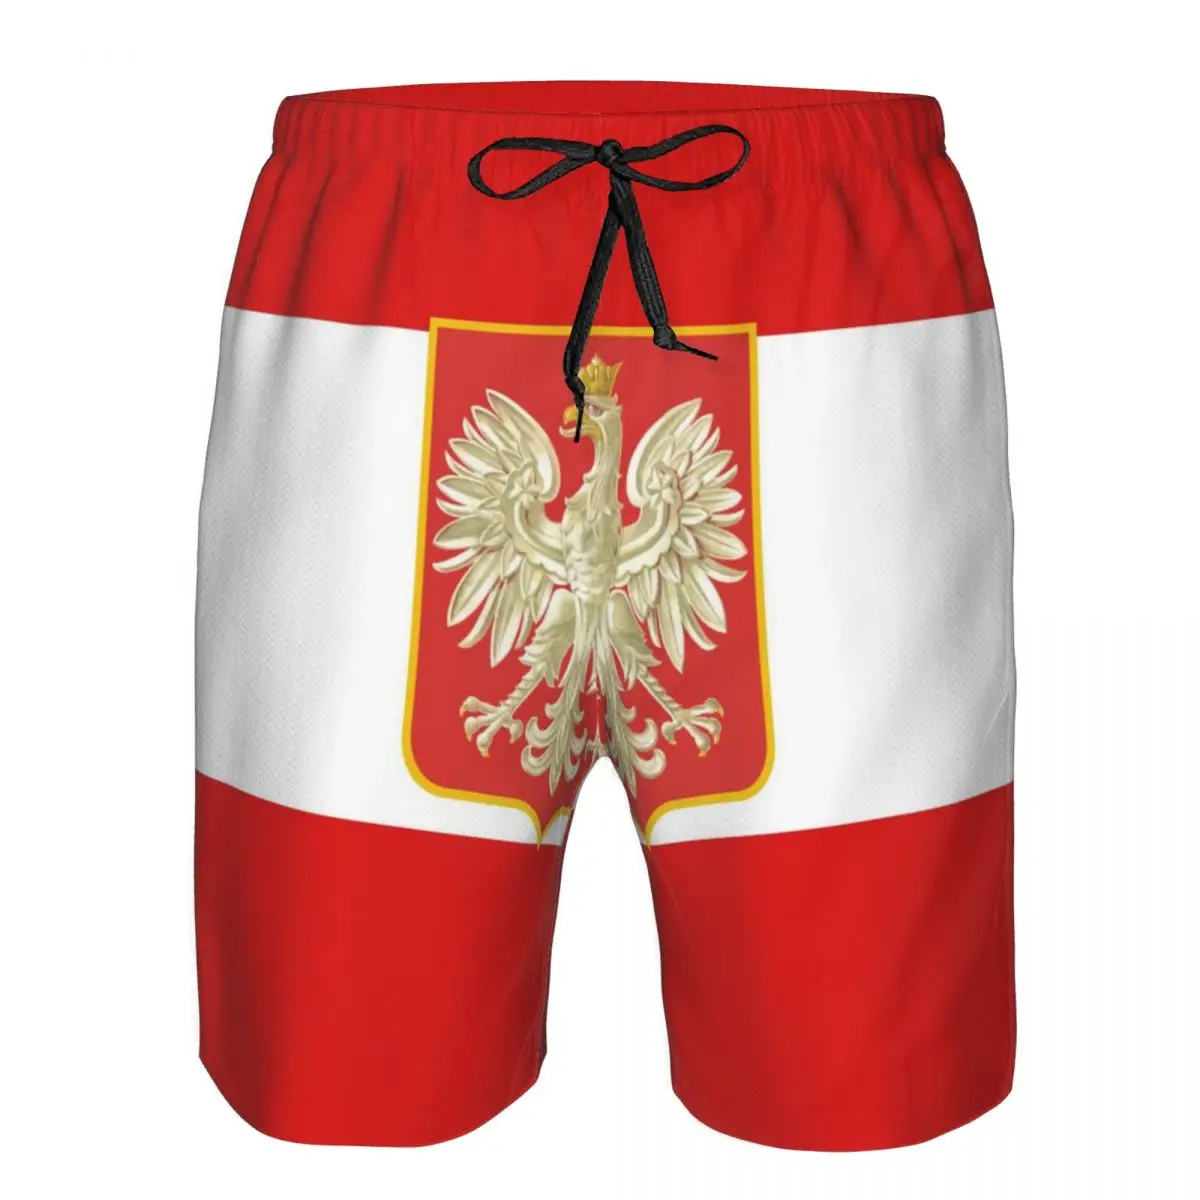 

Быстросохнущие плавательные шорты с флагом Польши для мужчин, мужские купальники, мужские купальные плавки, летняя пляжная одежда для купания